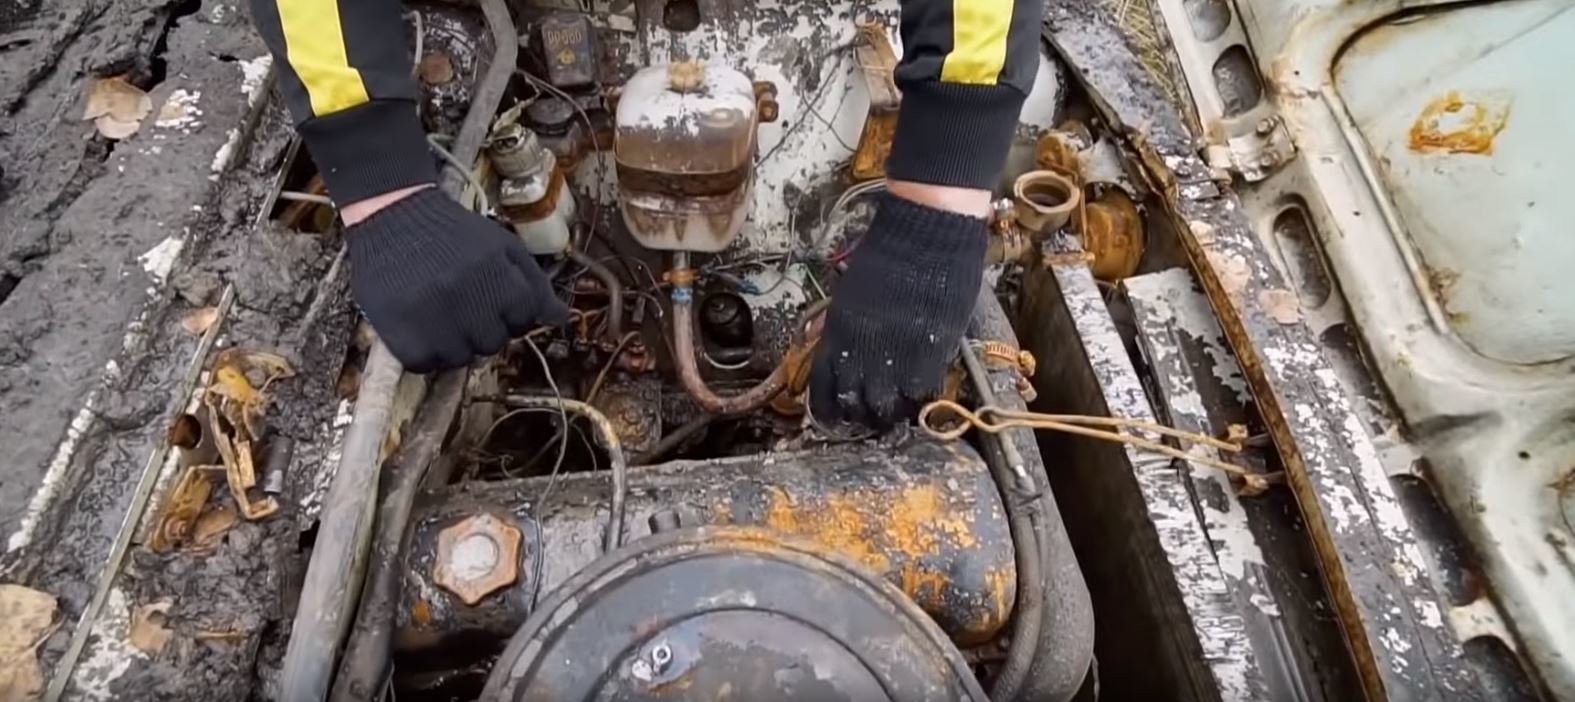 Ze tří automobilů, které v Rusku zakopali na rok pod zem, se u dvou podařilo nastartovat motor